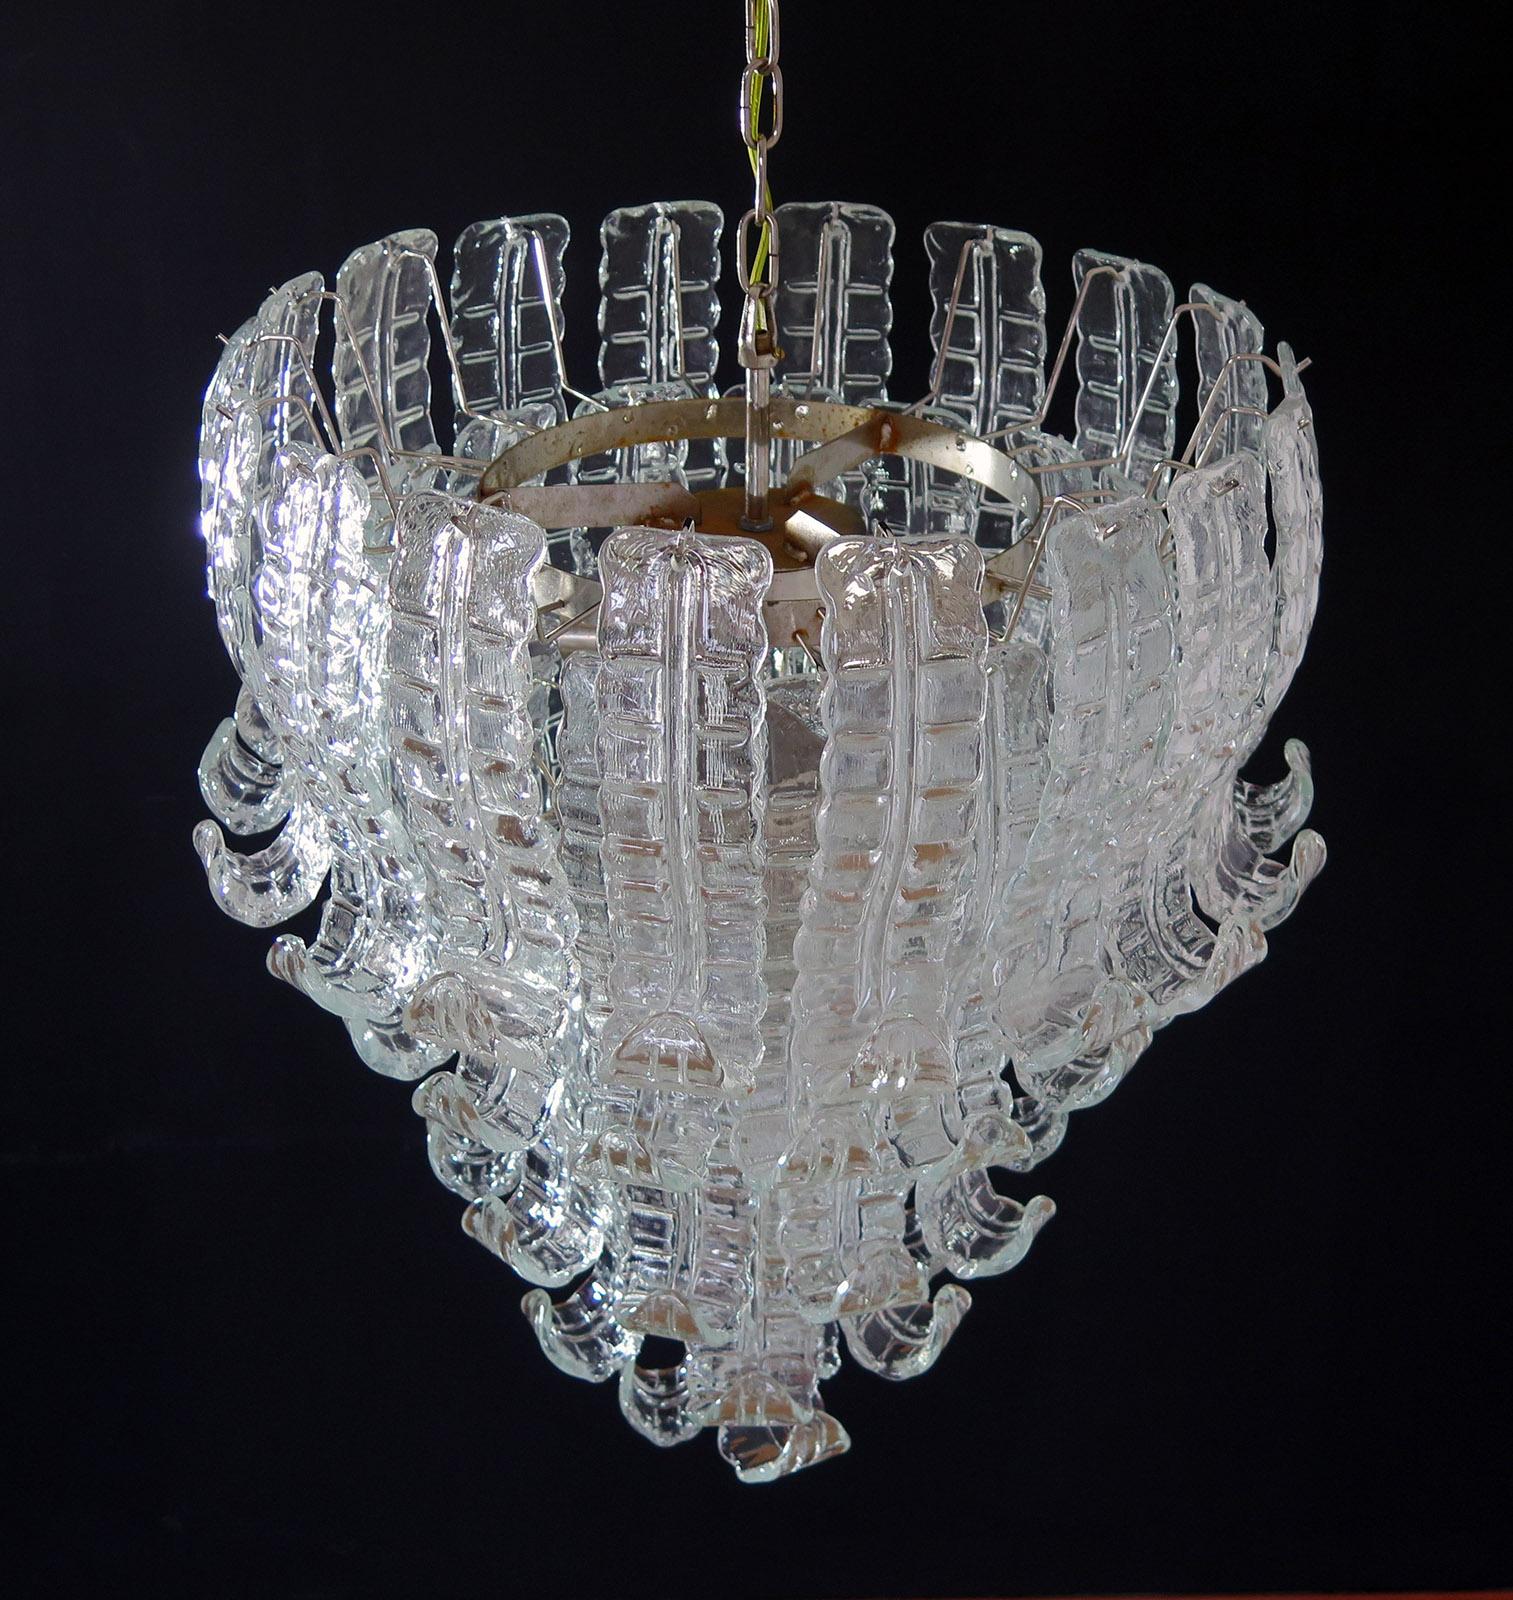 Magnifique et immense lustre italien de Murano composé de 52 splendides verres transparents qui donnent un aspect très élégant
Période : 1970s
Dimensions : 55.140 cm de hauteur avec chaîne ; 80 cm de hauteur sans chaîne ; 70 cm de